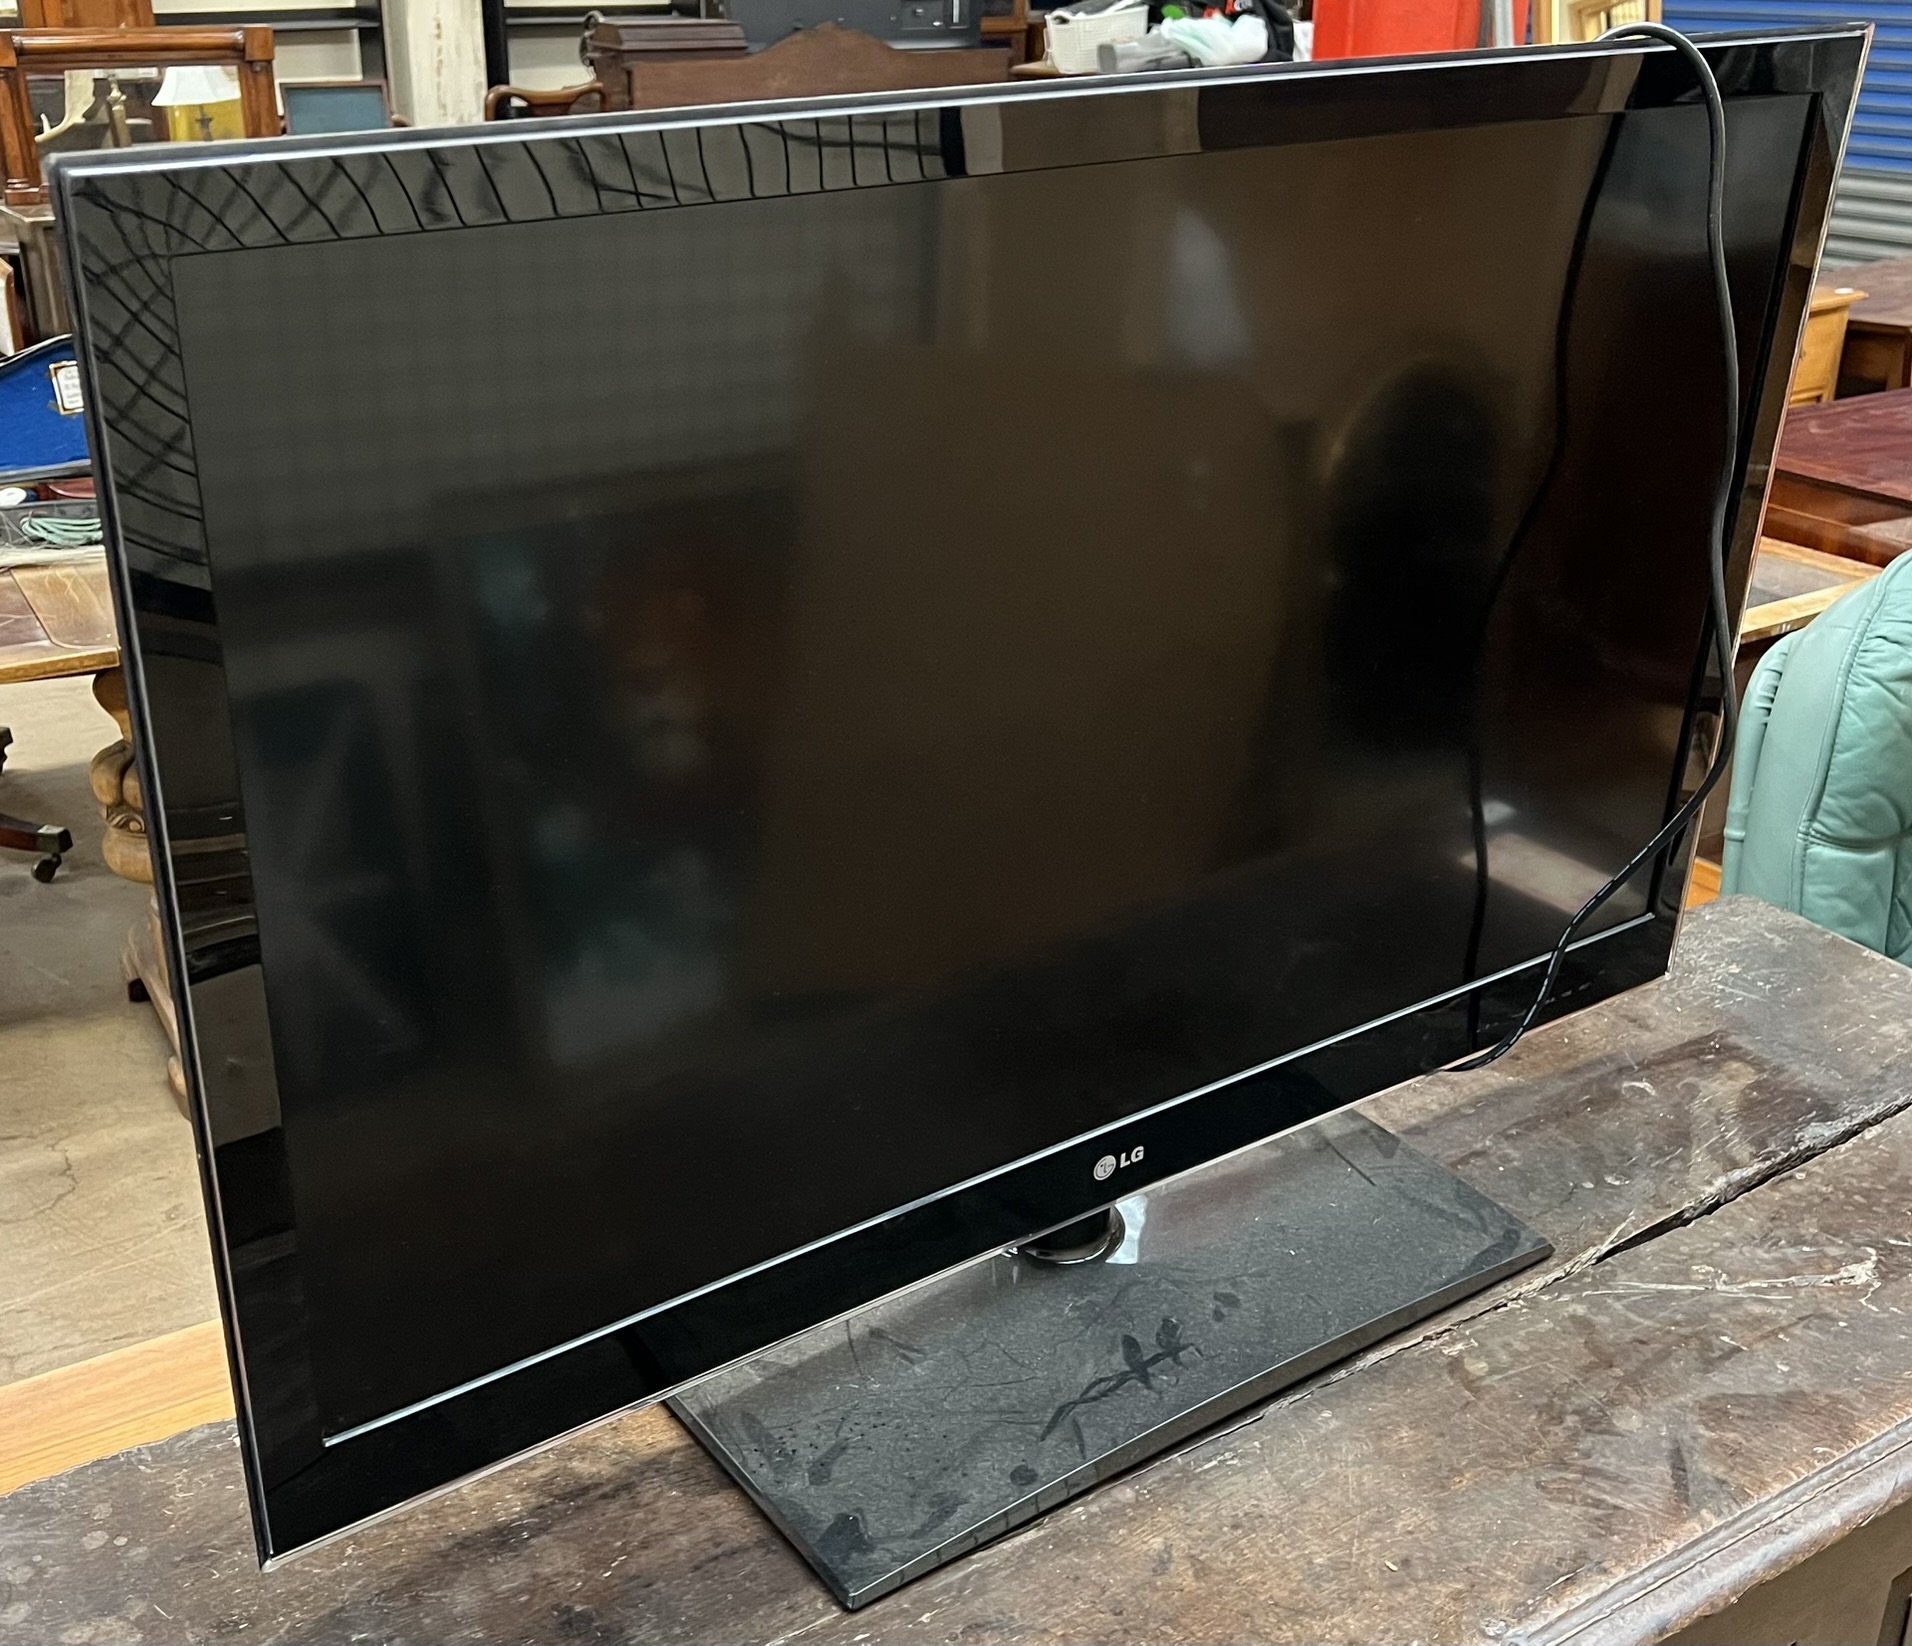 An LG 42" flat screen television model No.